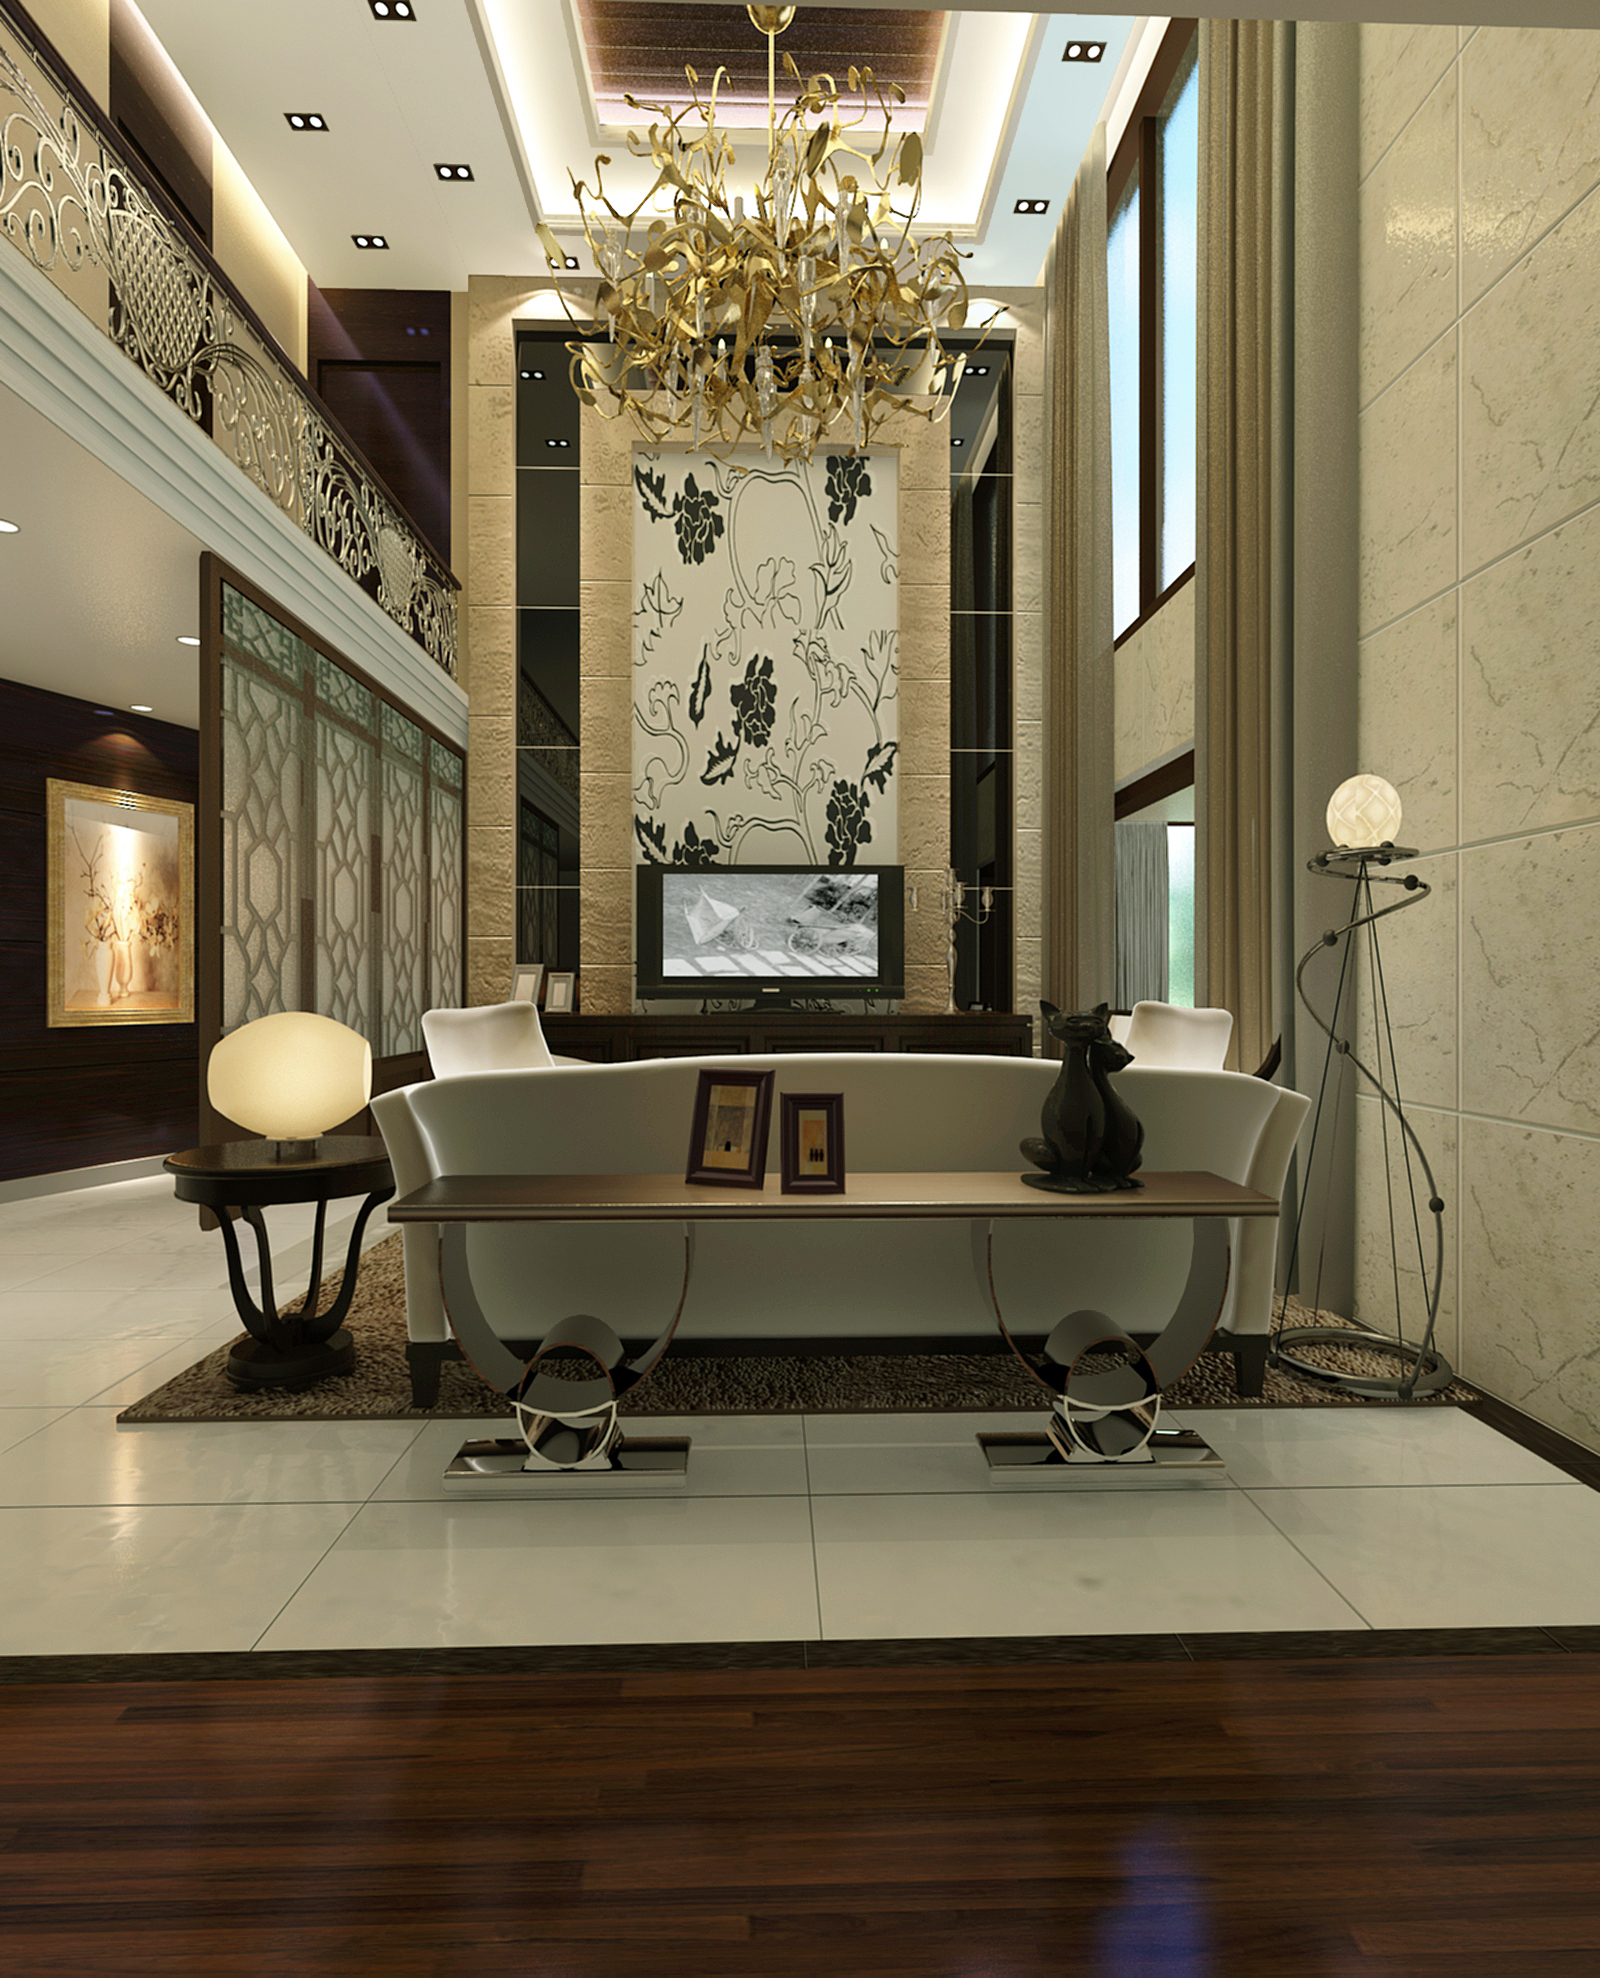 简约 中式 别墅 美林湖 250平米 装修 报价 设计 家居 客厅图片来自徐丽娟在中国美林湖-别墅设计-新中式风格的分享